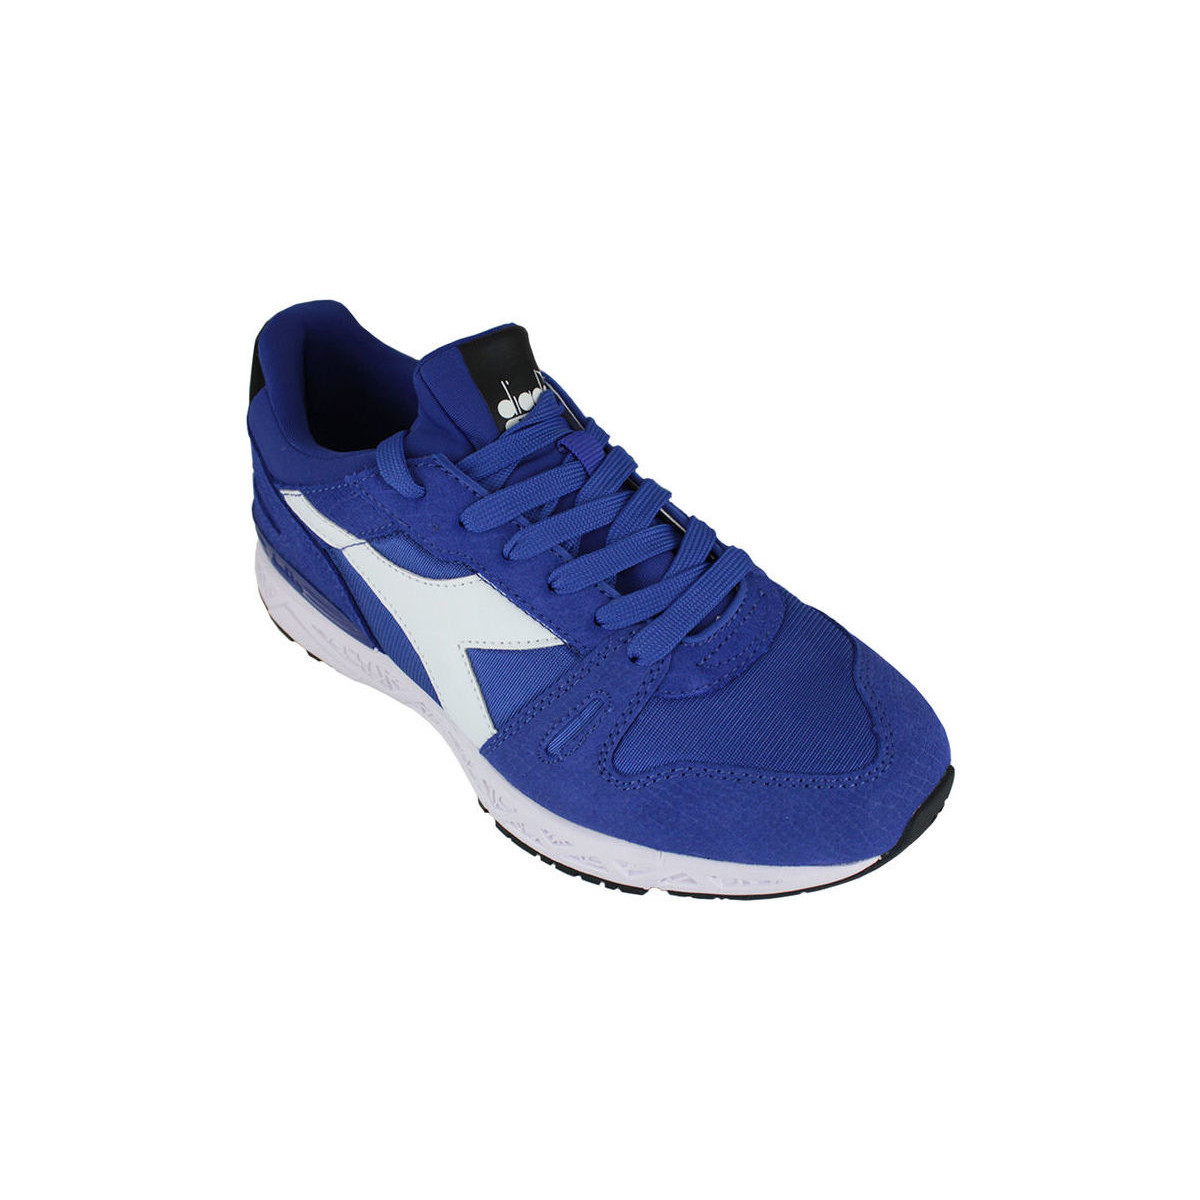 Sneakers Diadora Titan reborn chromia 501.175120 01 60050 Imperial blue